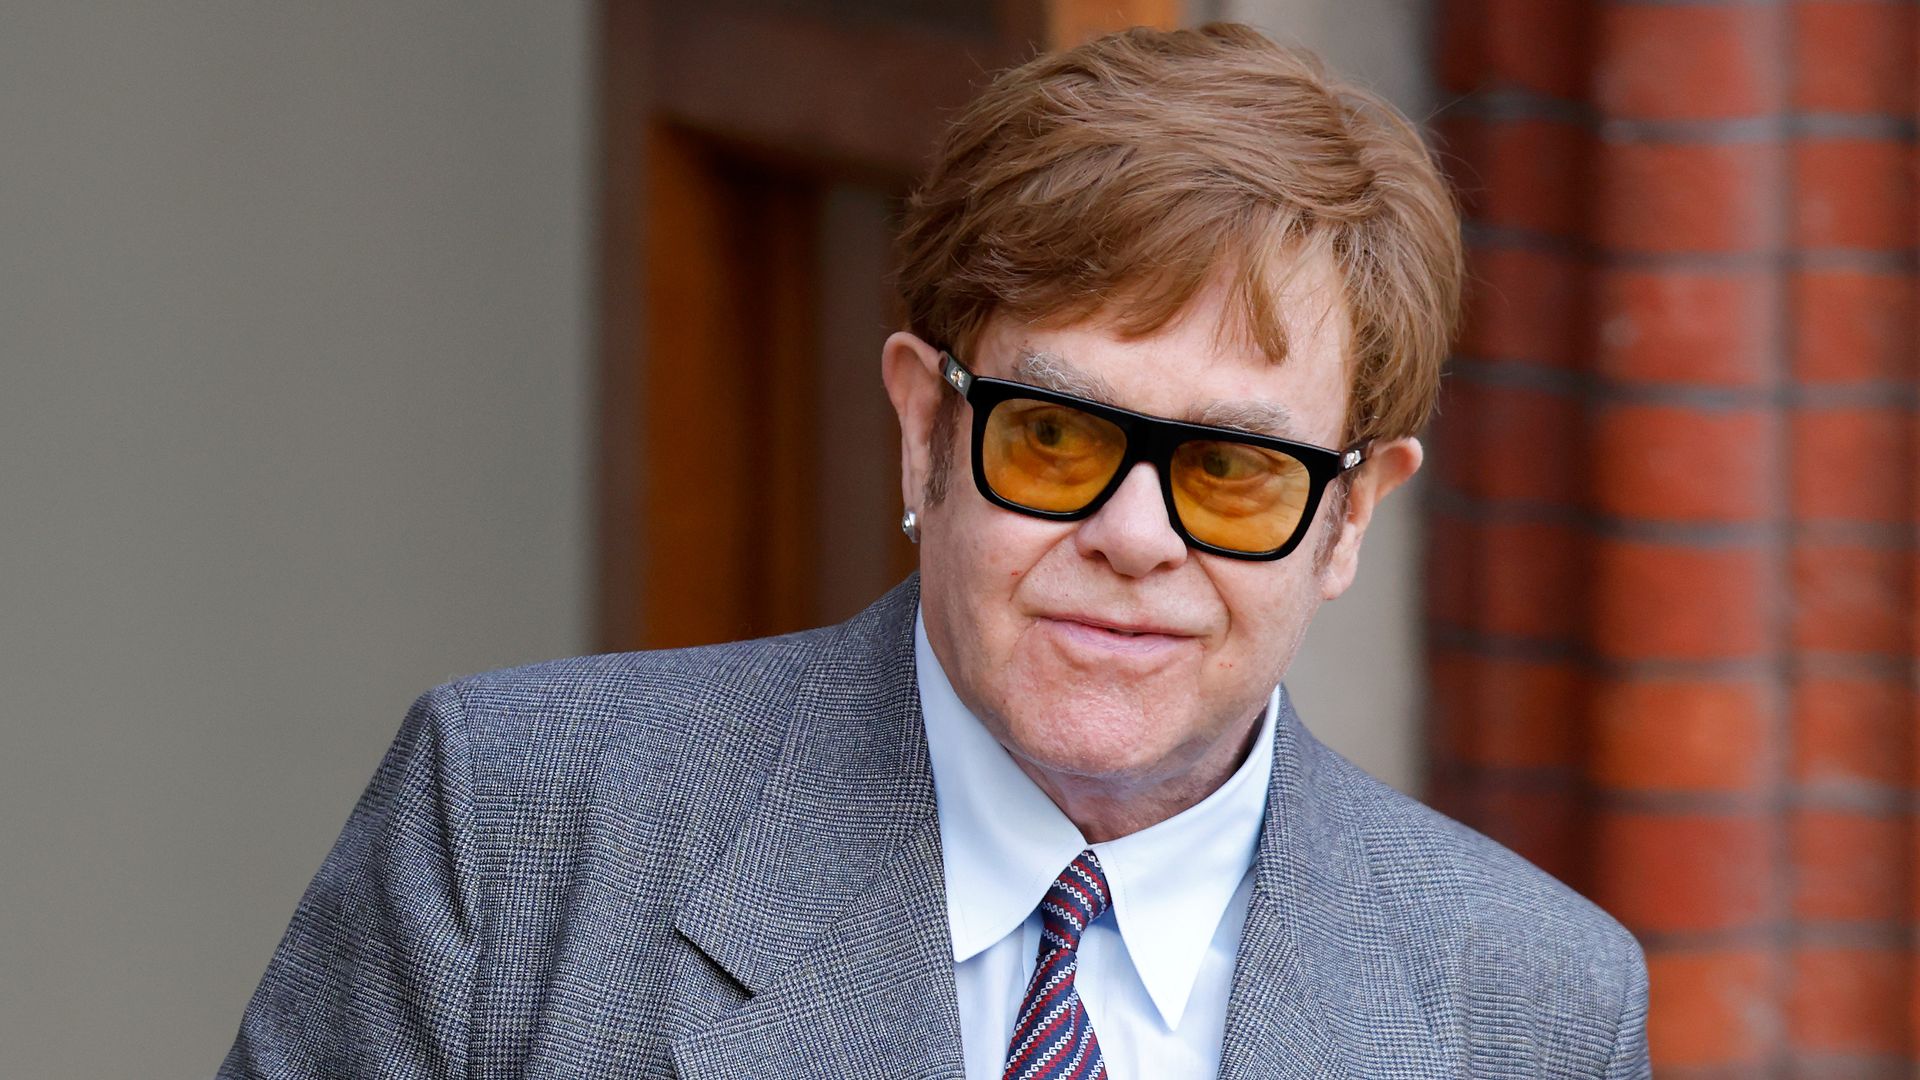 Elton John in a light grey suit